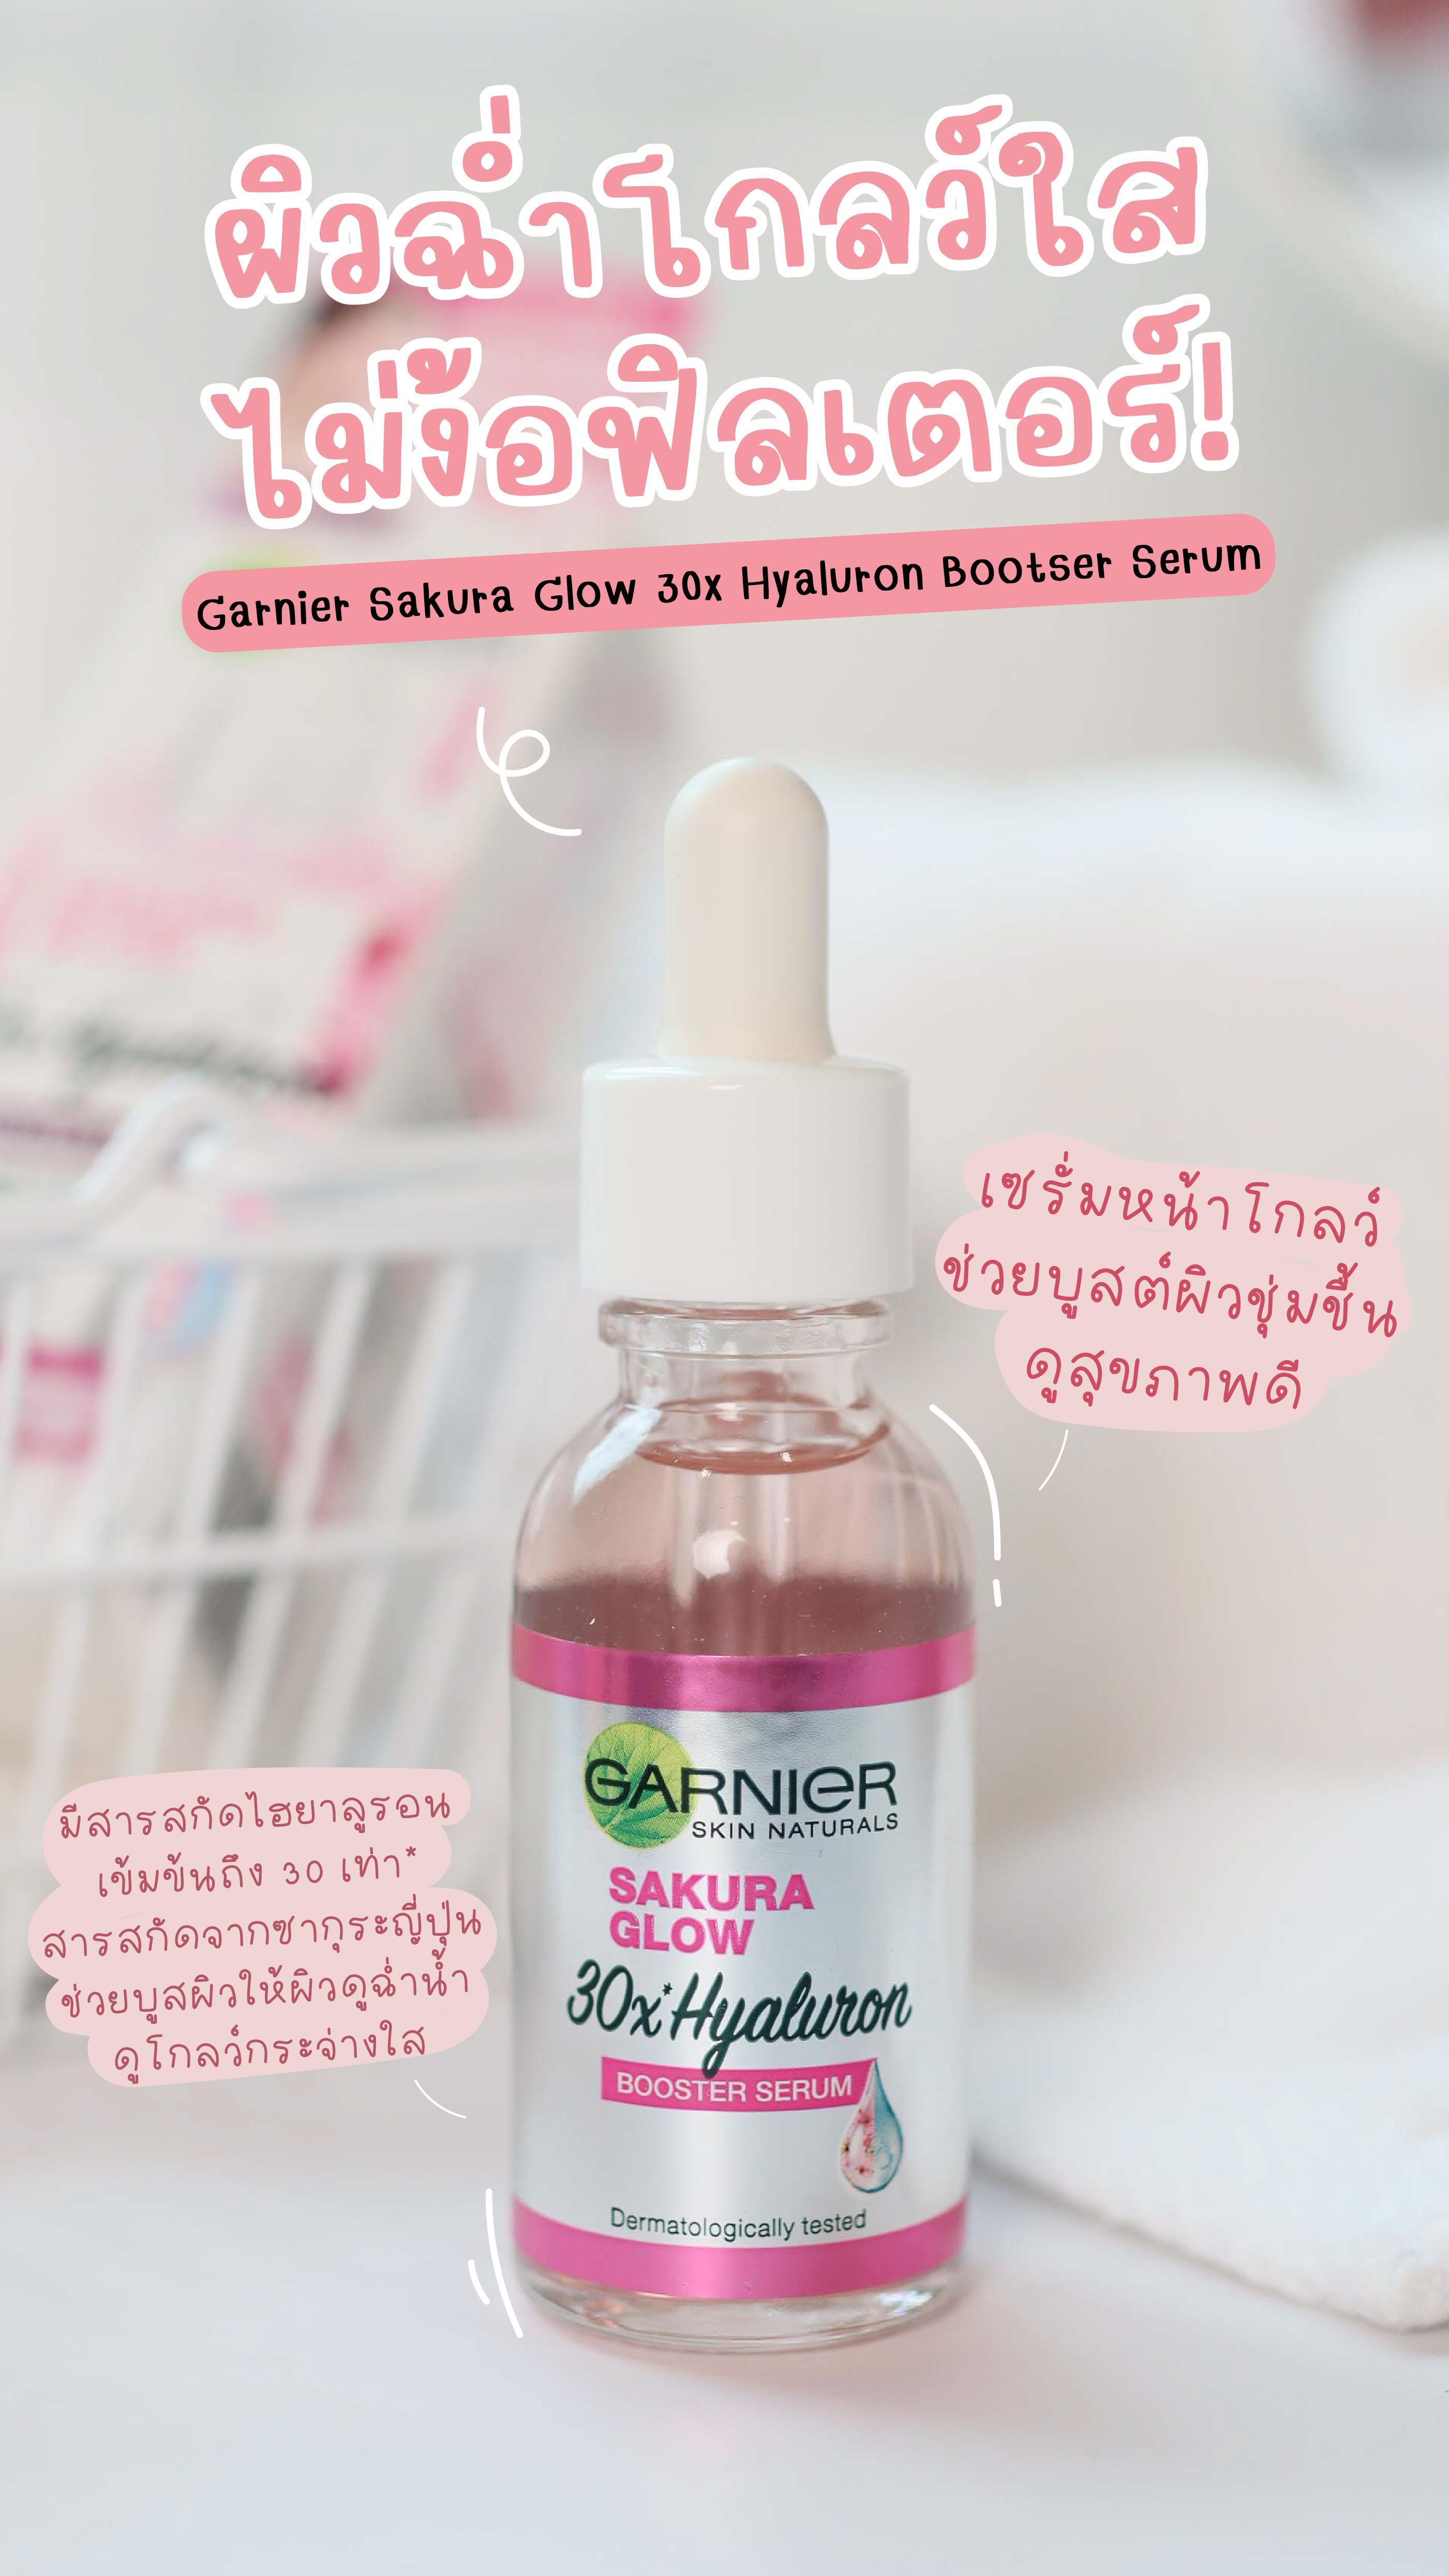 ภาพหน้าปก บูสต์ผิวโกลว์ใส สุขภาพดี ด้วยเซรั่มหน้าโกลว์ Garnier Sakura Glow Booster serum ที่:0